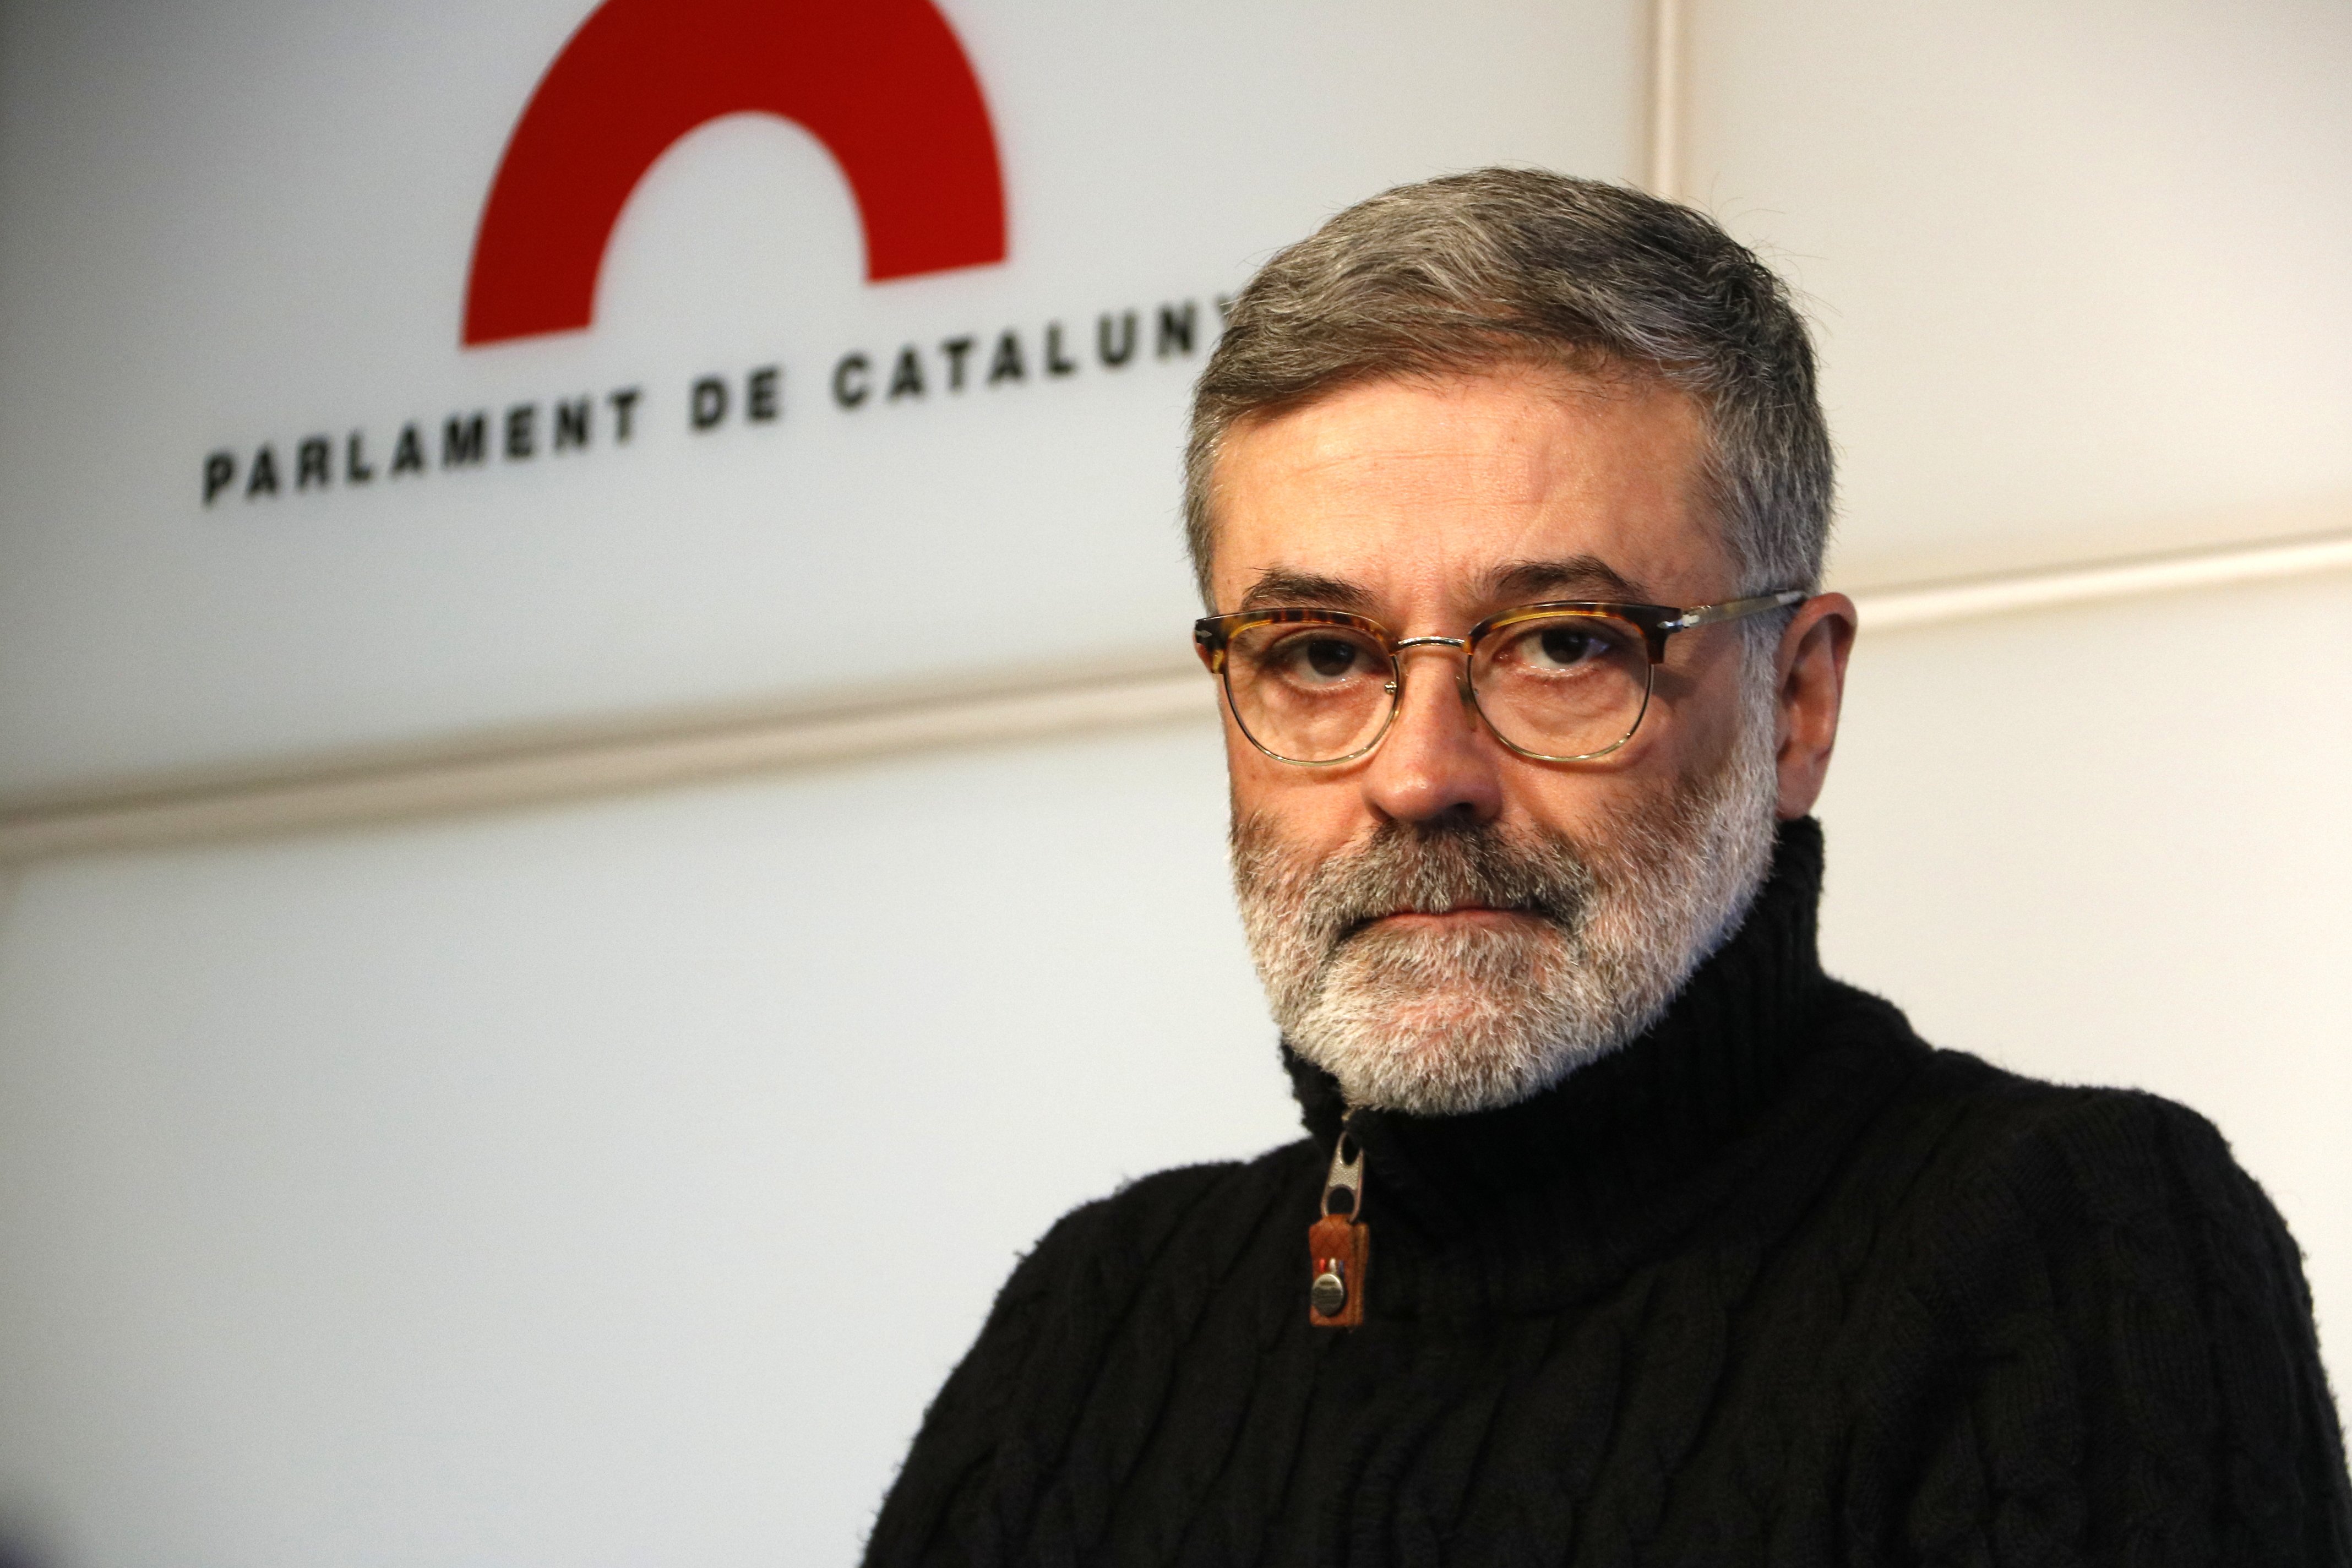 La CUP fa una crida a sortir al carrer davant la retenció de Puigdemont